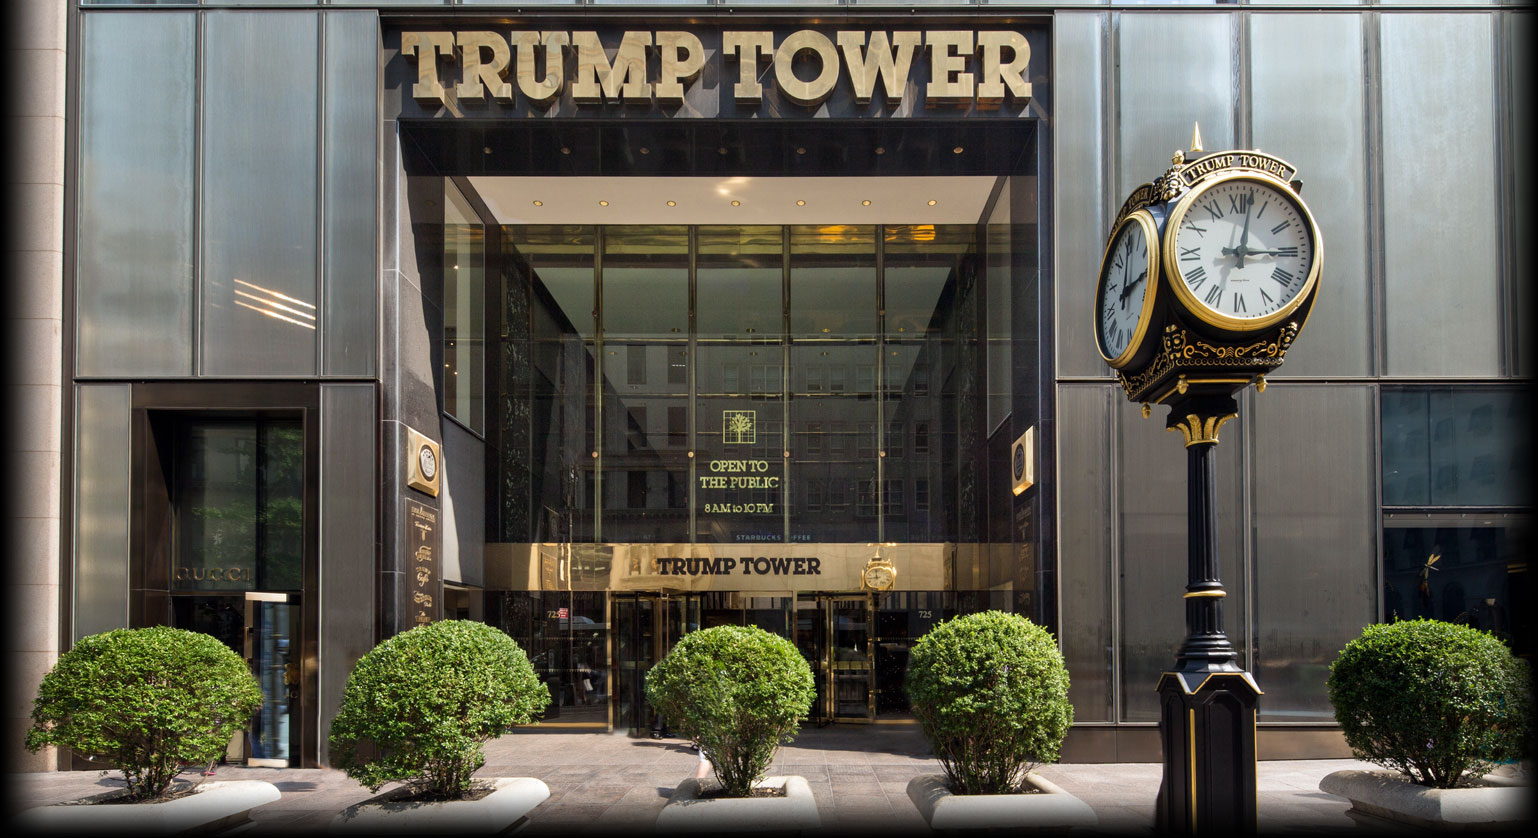 Donald Trump Property Tower